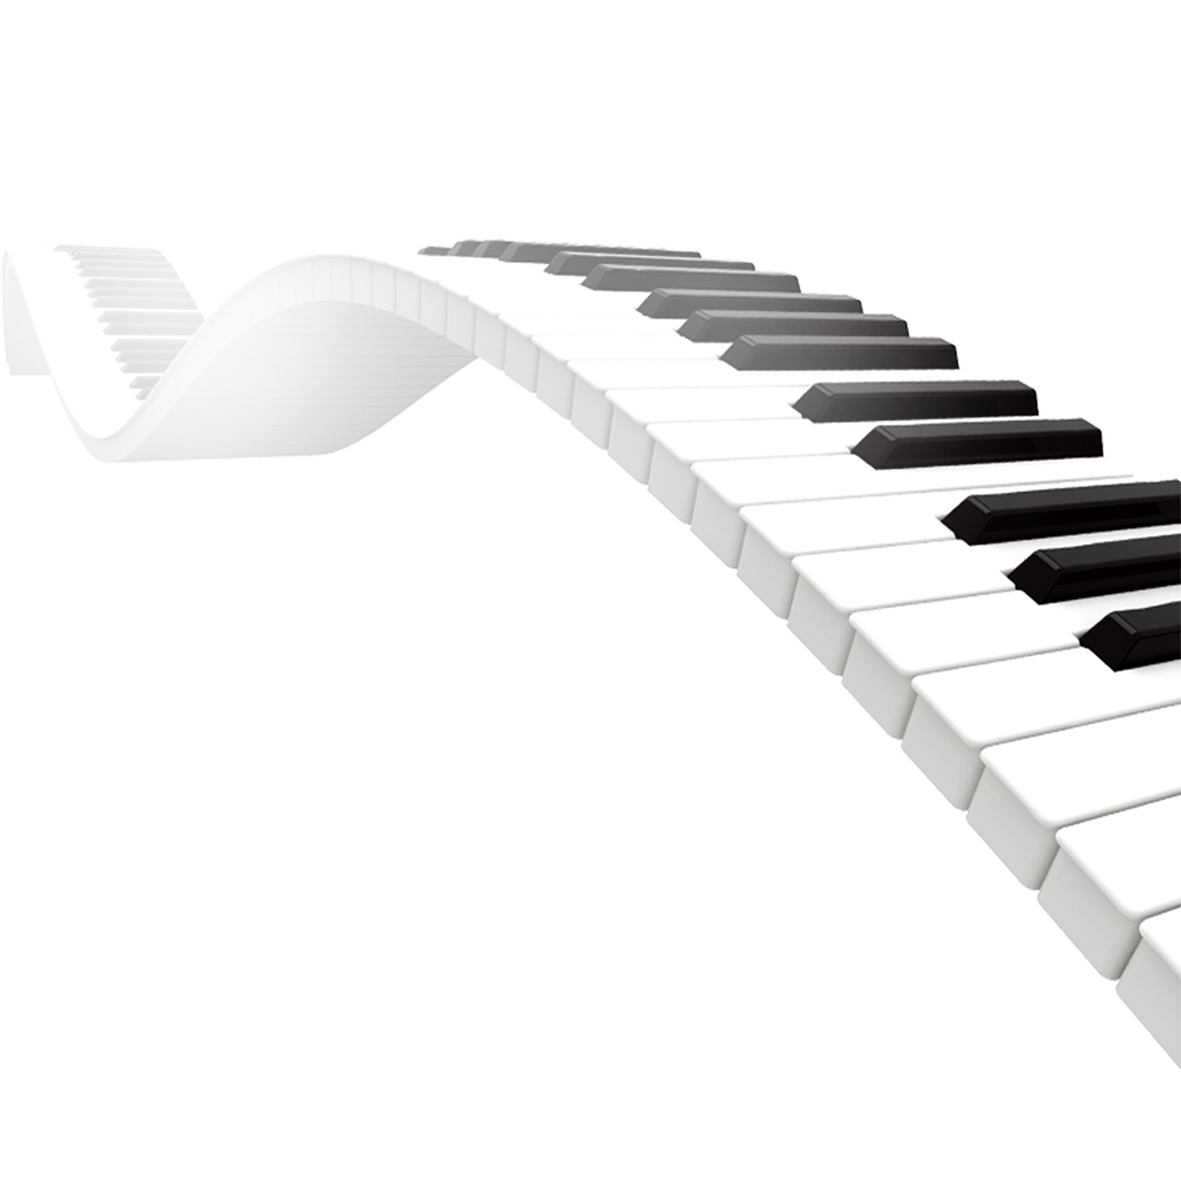 البيانو الموسيقى لوحة المفاتيح PNG الموافقة المسبقة عن علم